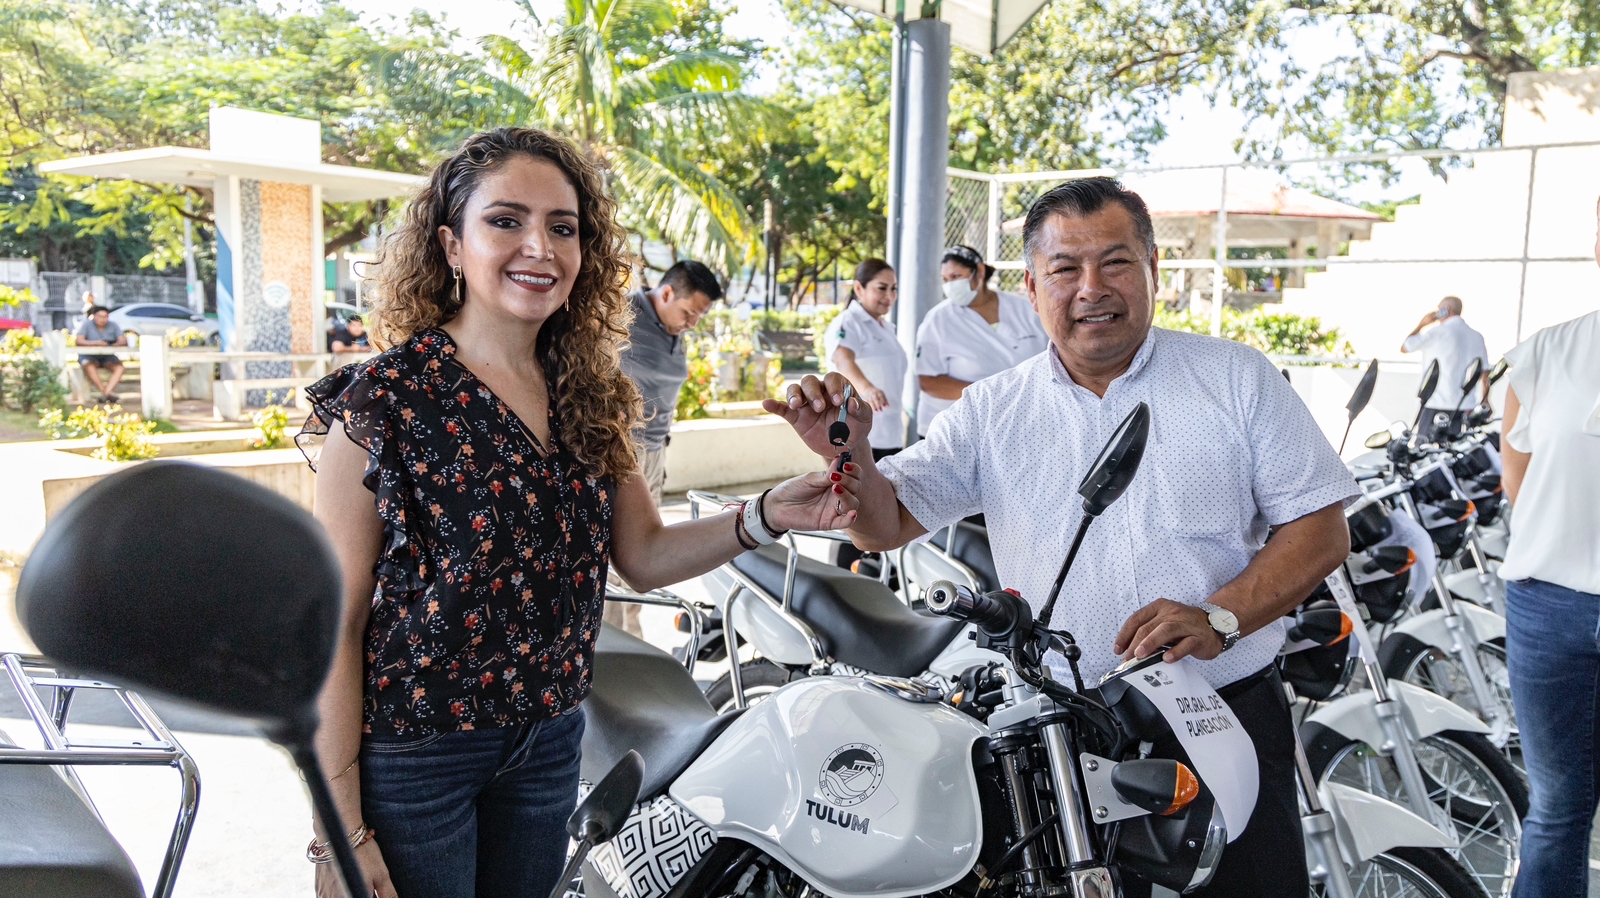 Equipa Marciano Dzul a diez direcciones de su administración con motocicletas nuevas